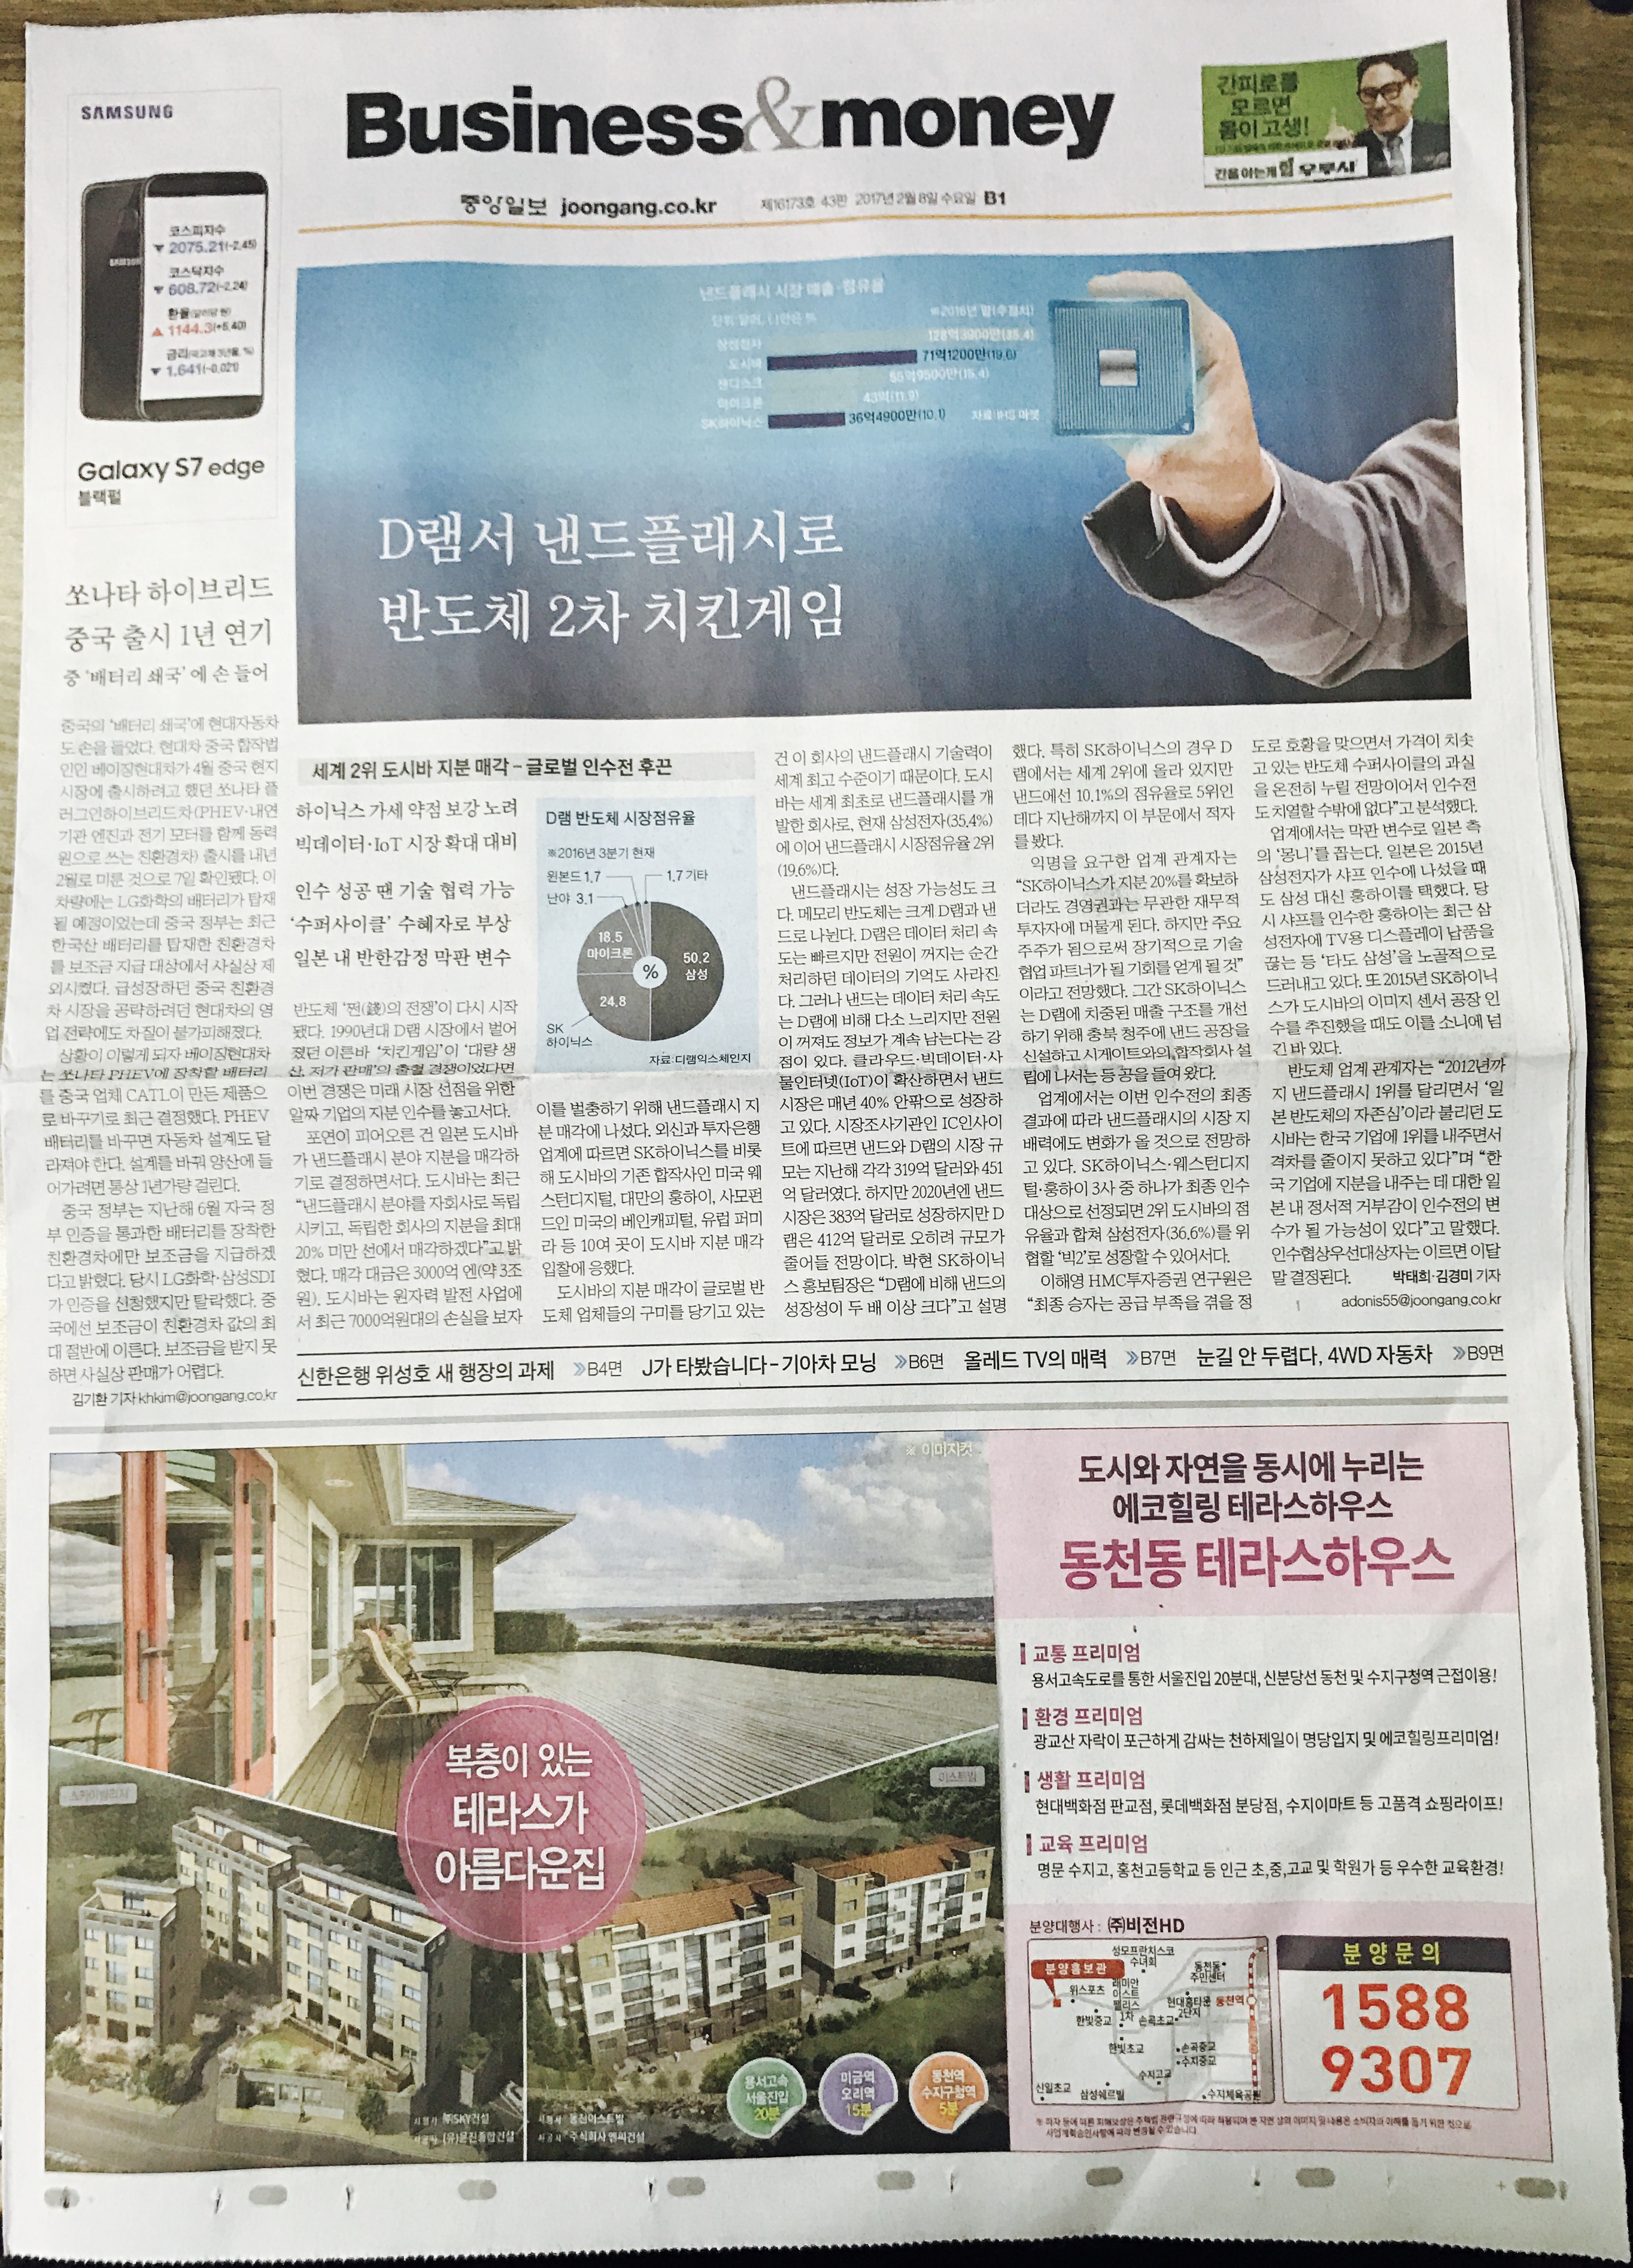 2월 8일 중앙일보 B1 테라스하우스 (4단통).jpg